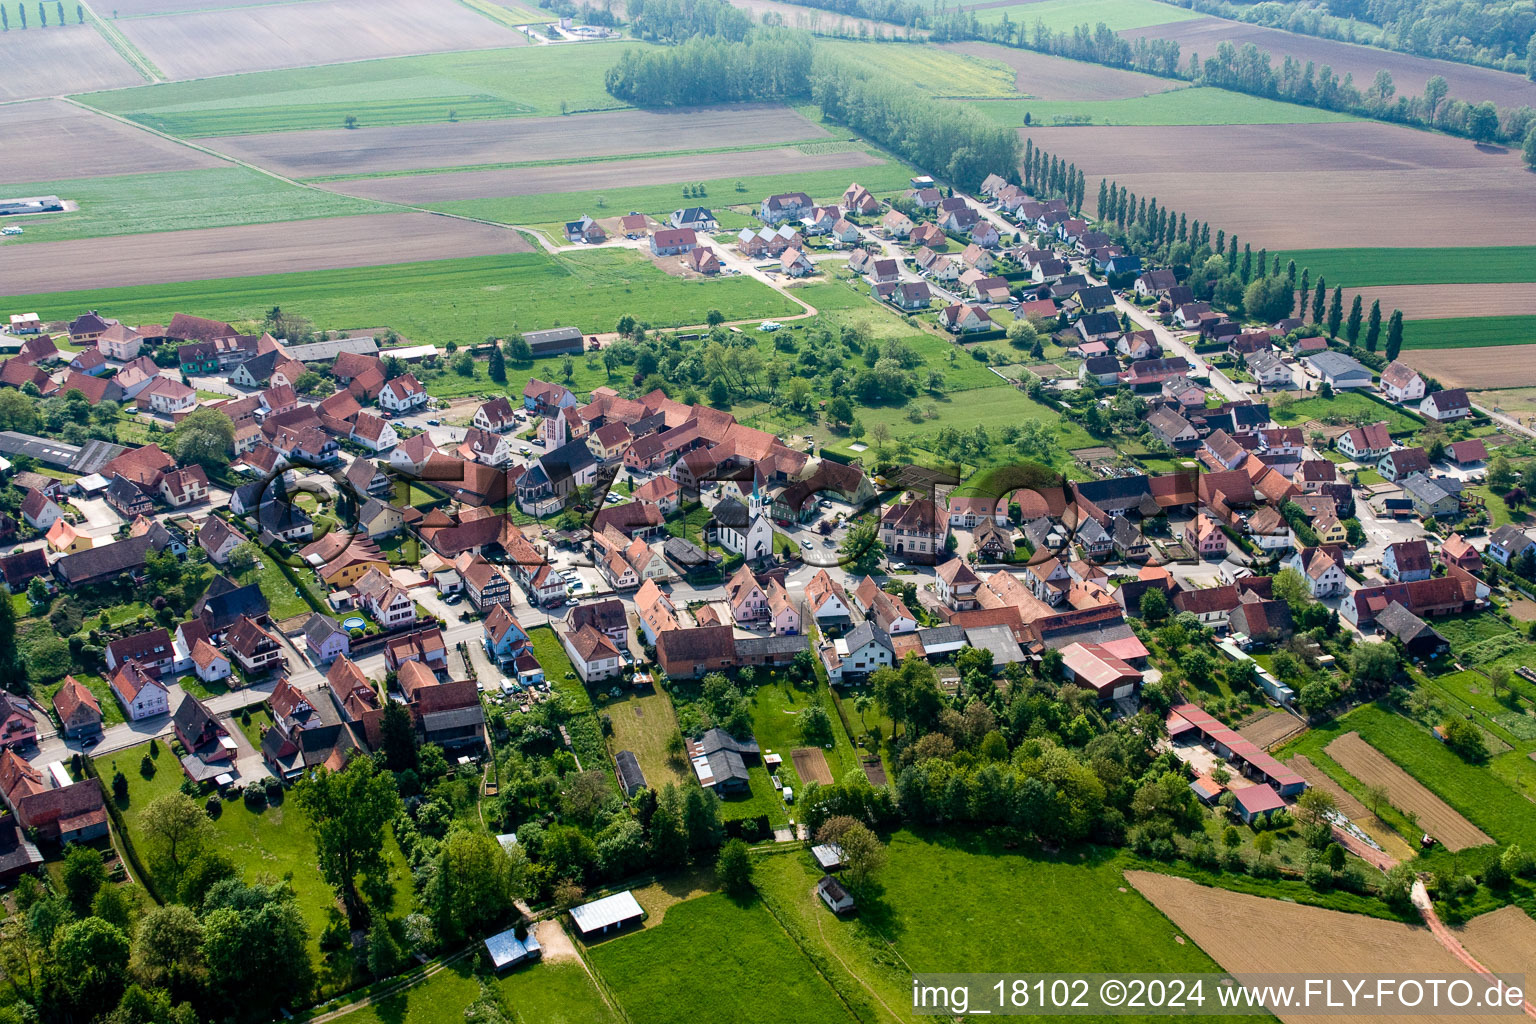 Buhl im Bundesland Bas-Rhin, Frankreich von der Drohne aus gesehen